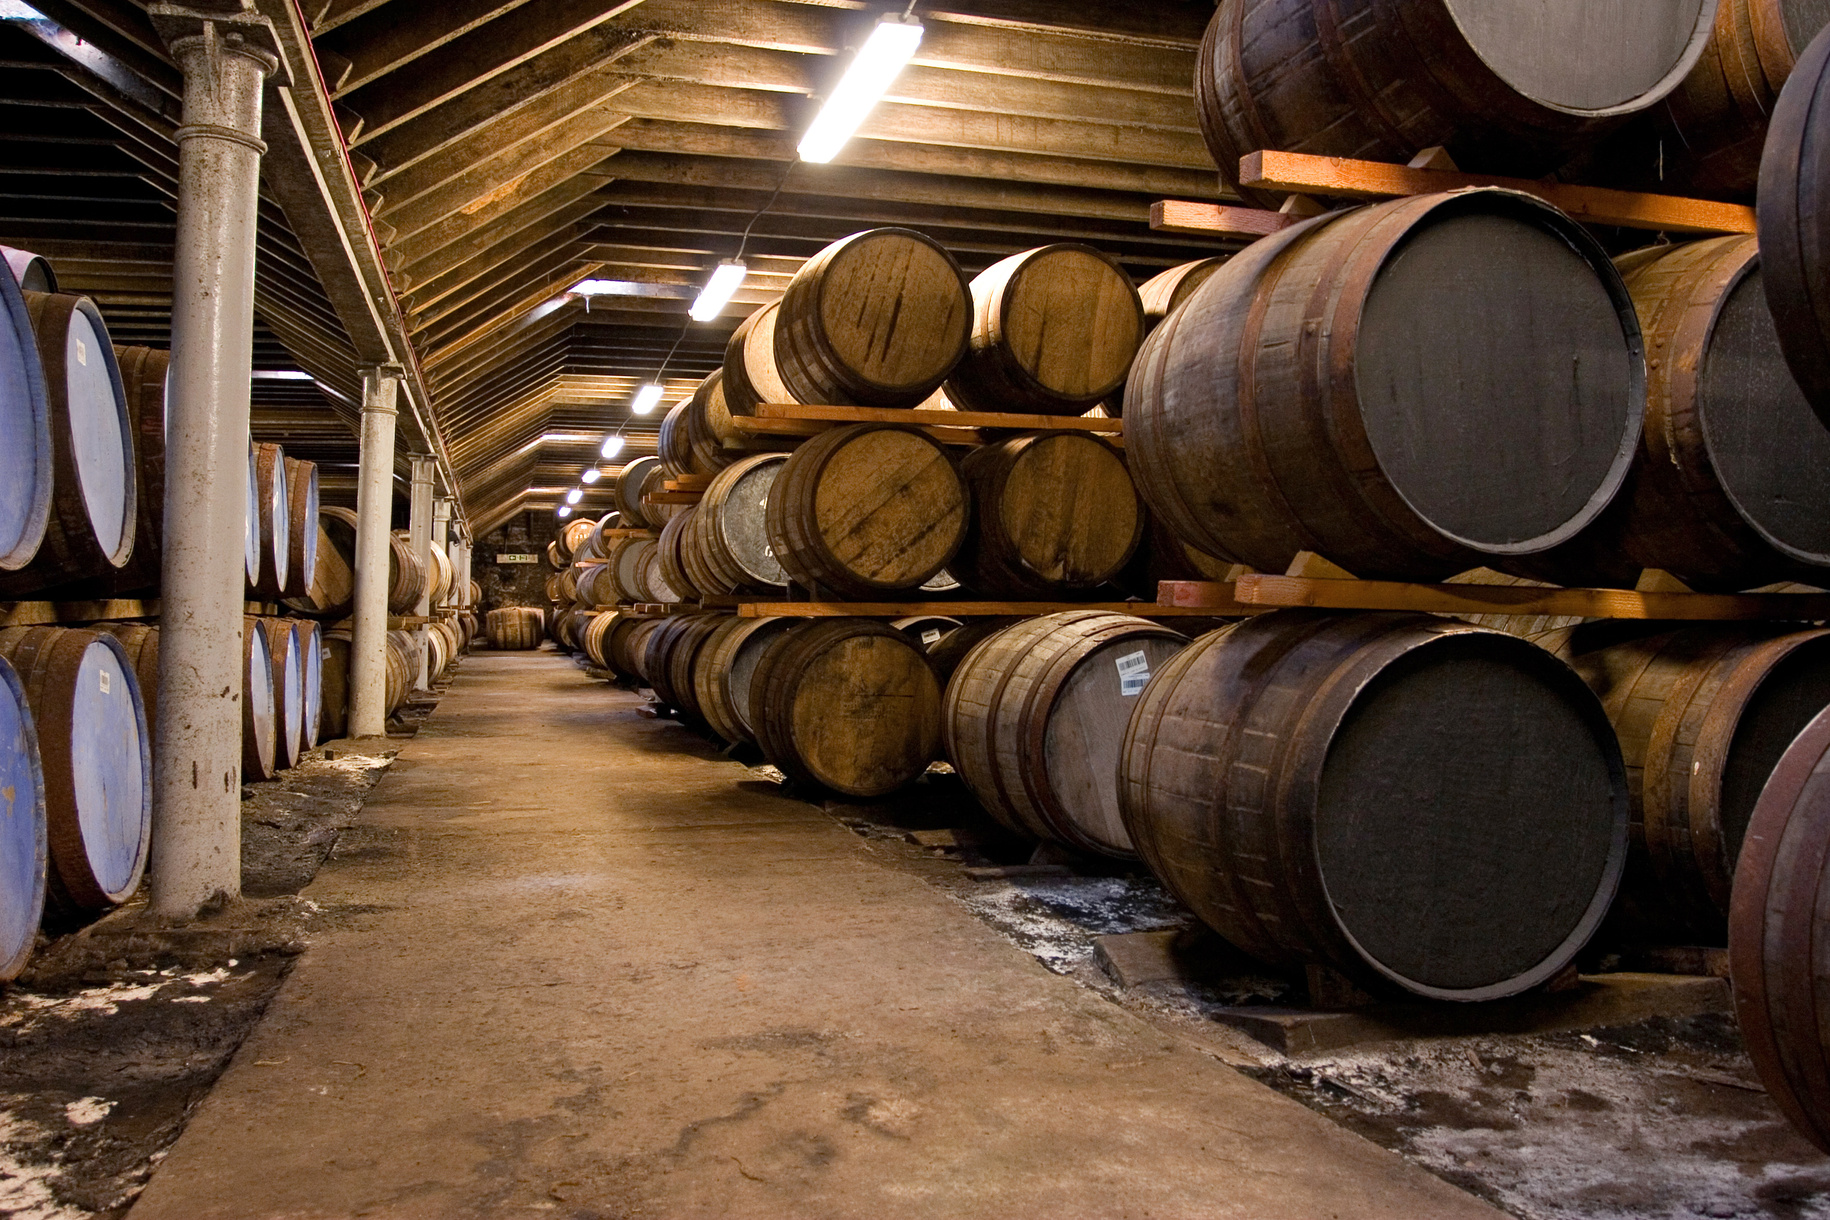 Wooden whisky barrels